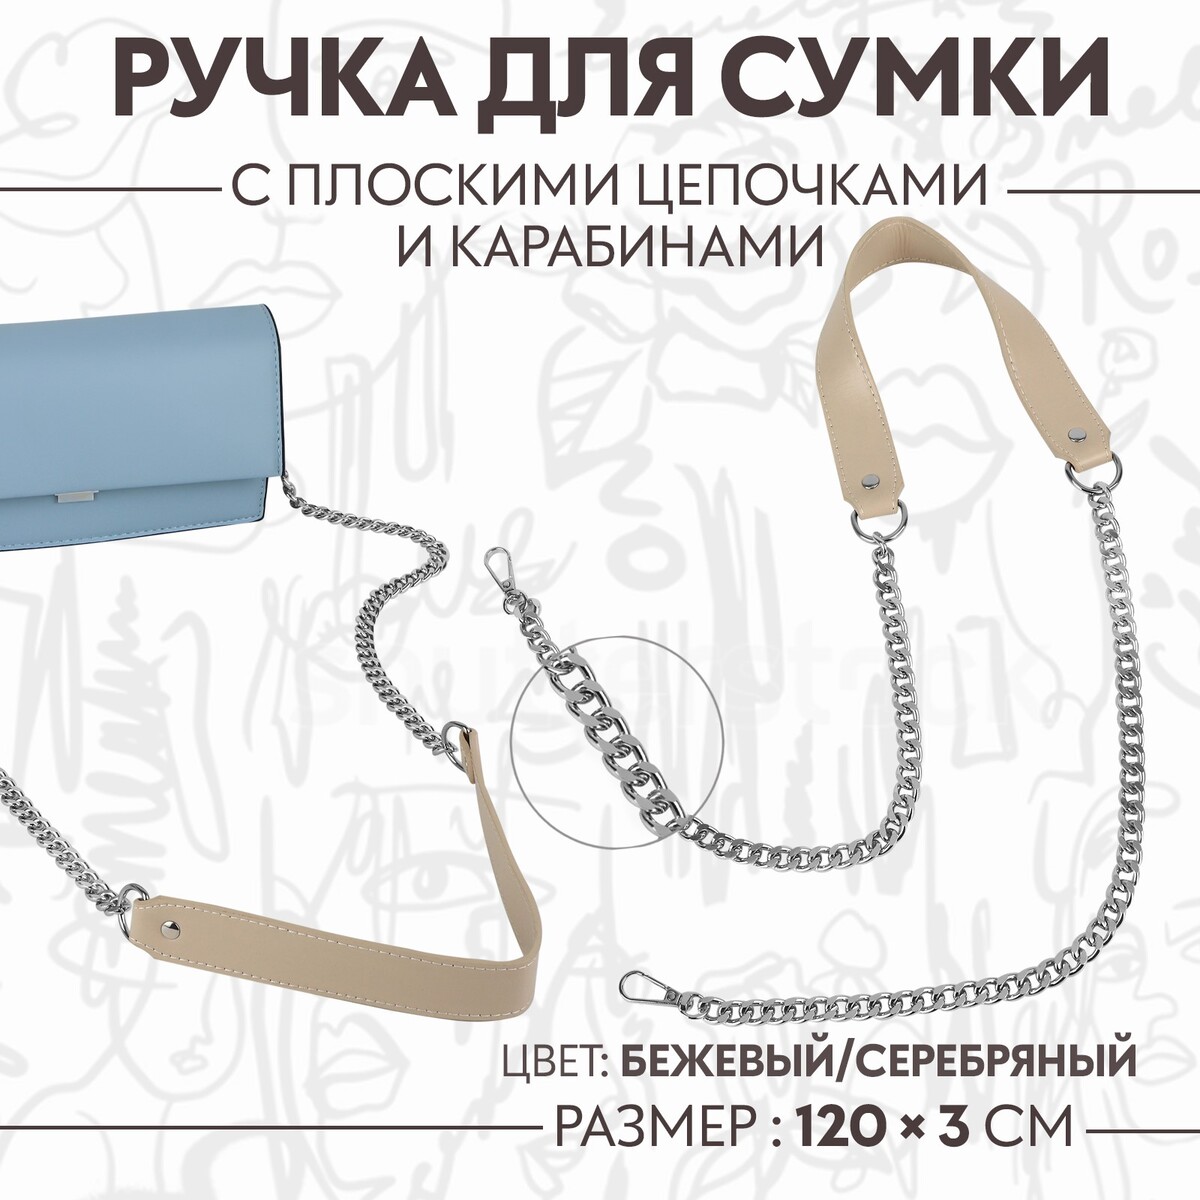 Ручка для сумки, с плоскими цепочками и карабинами, 120 × 3 см, цвет бежевый/серебряный ручка для сумки с плоскими цепочками и карабинами 120 × 3 см серебряный